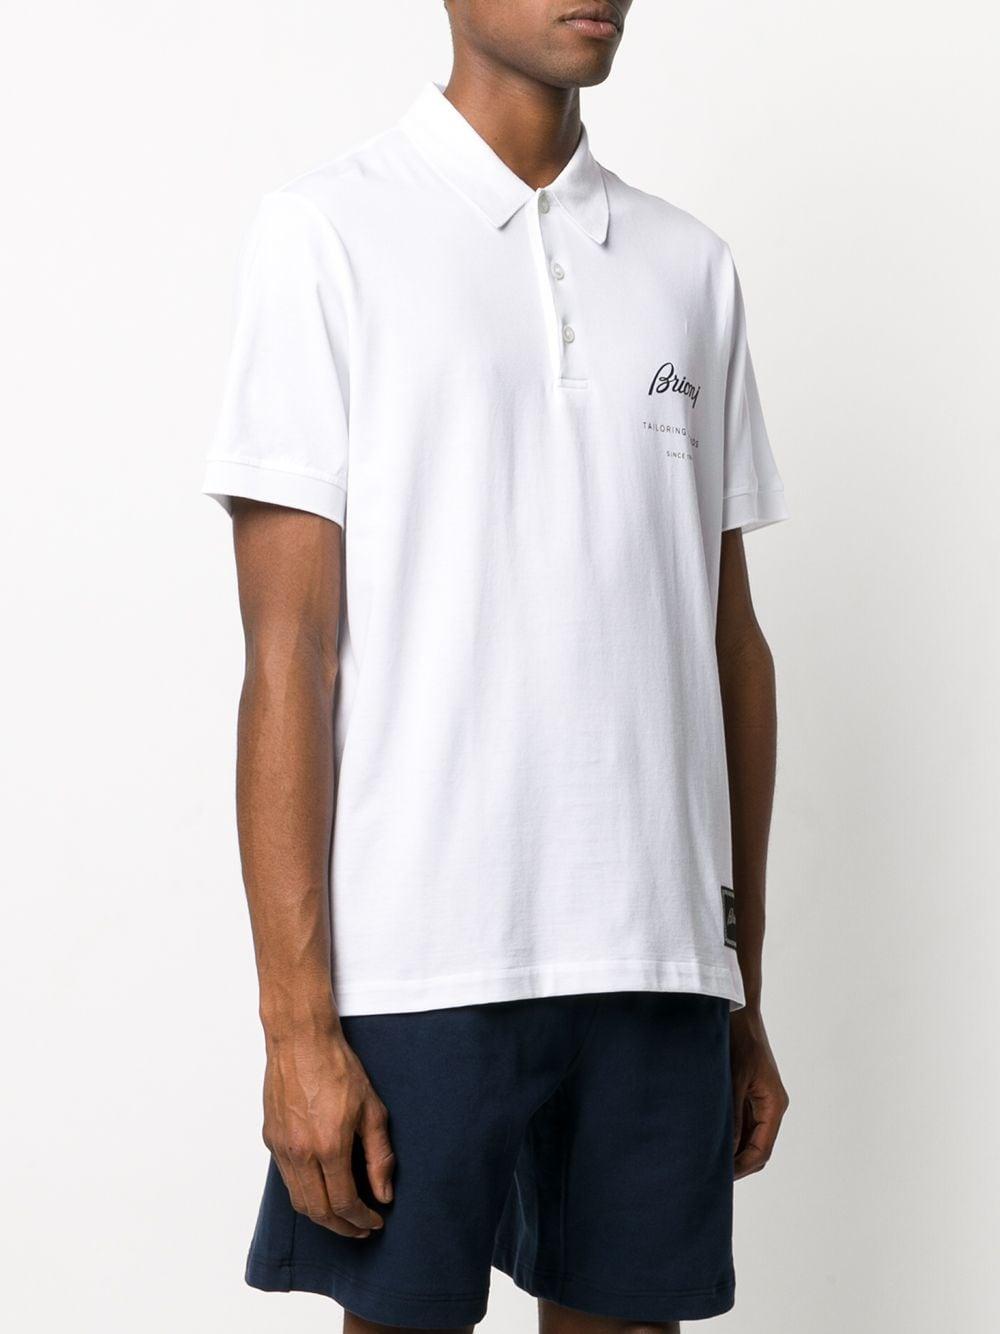 Brioni Logo Short-sleeve Polo Shirt in White for Men - Lyst